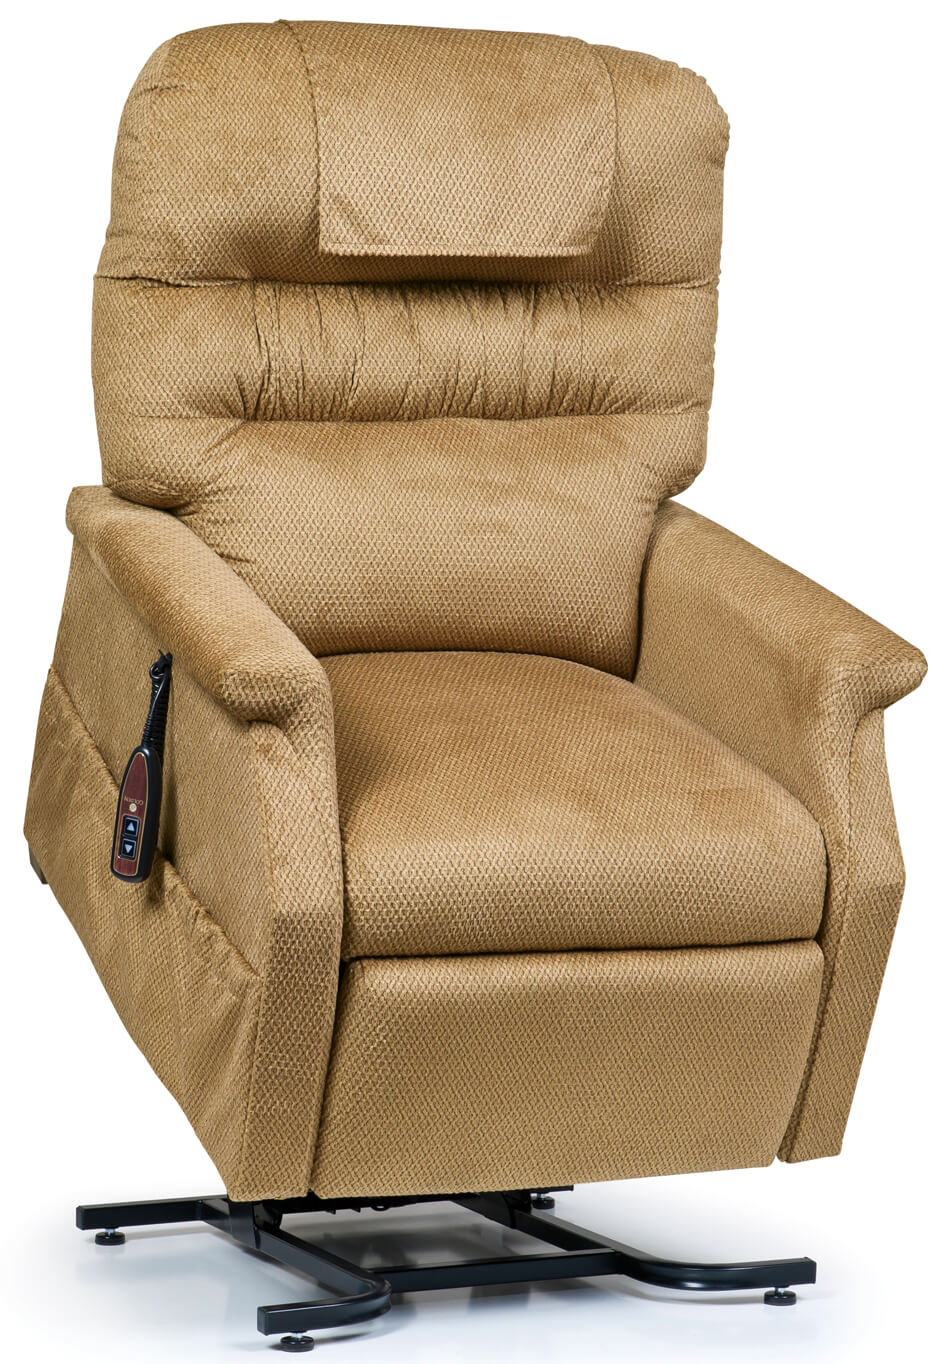 golden power lift and recline chair